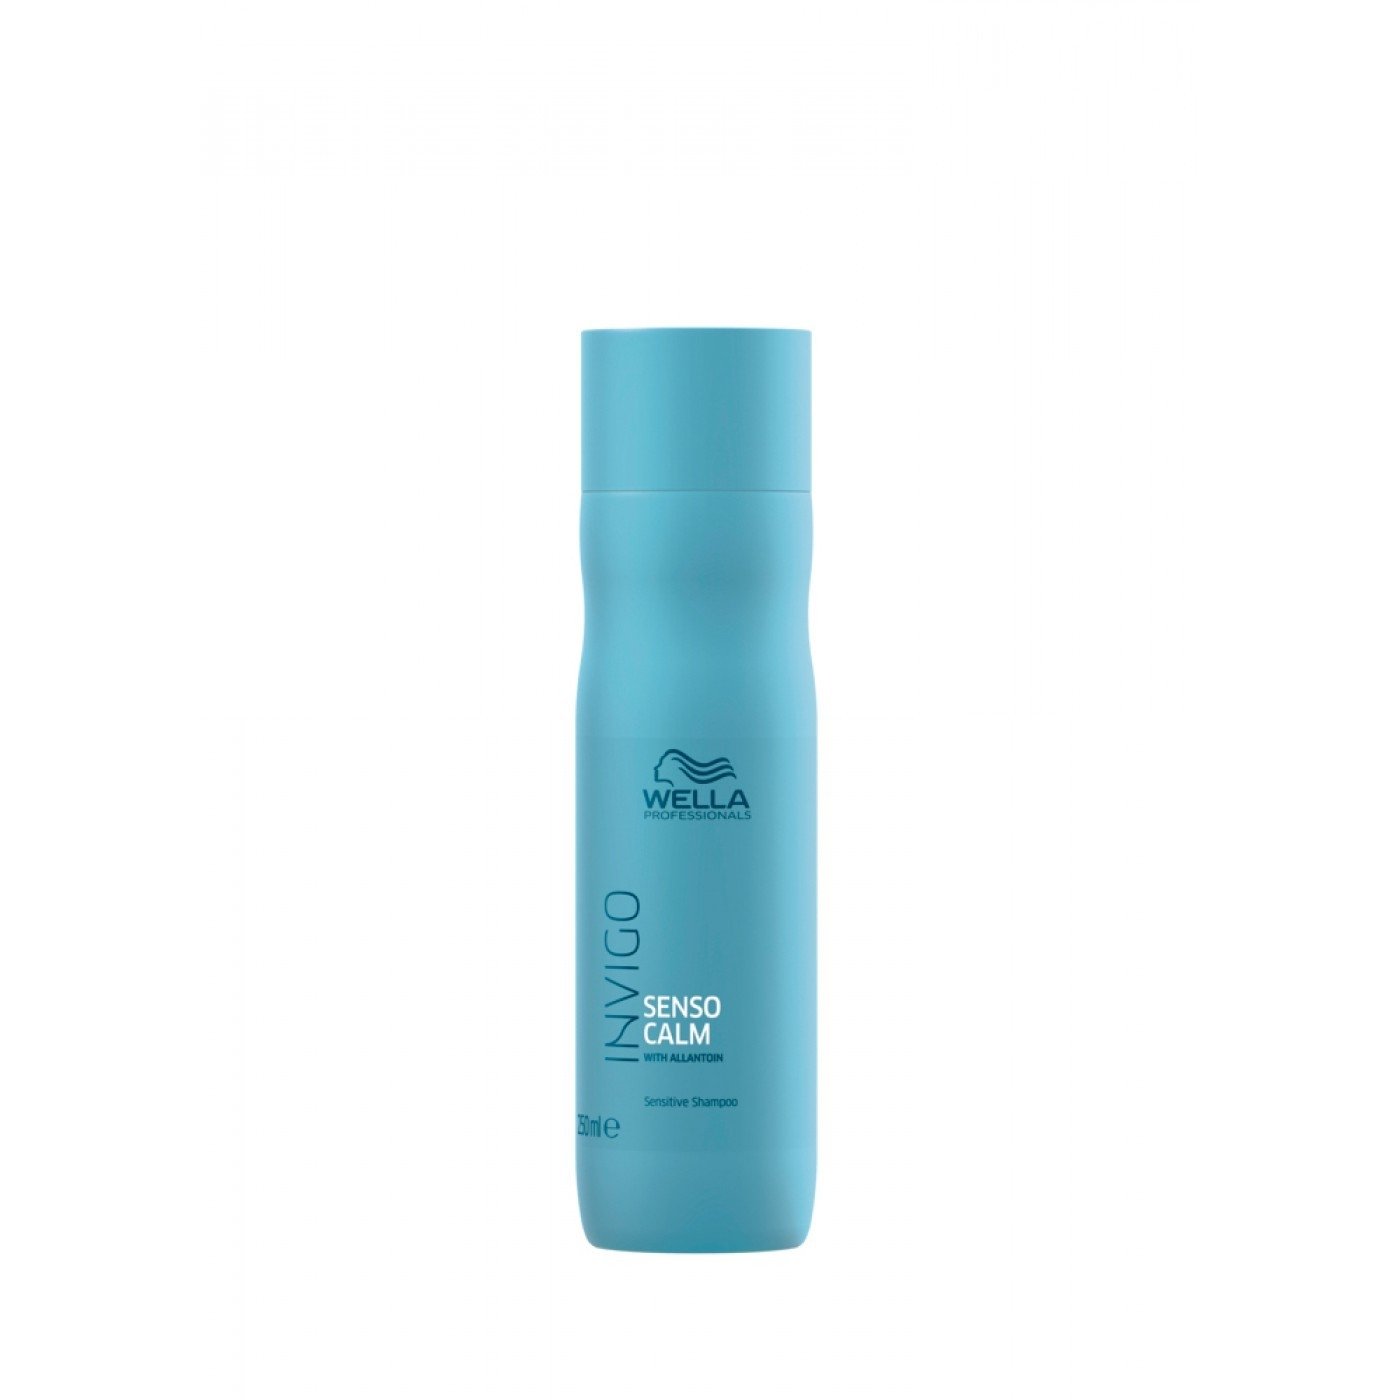 Шампуни для волос:  Wella Professionals -  Шампунь для чувствительной кожи головы Senso Calm INVIGO (250 мл)